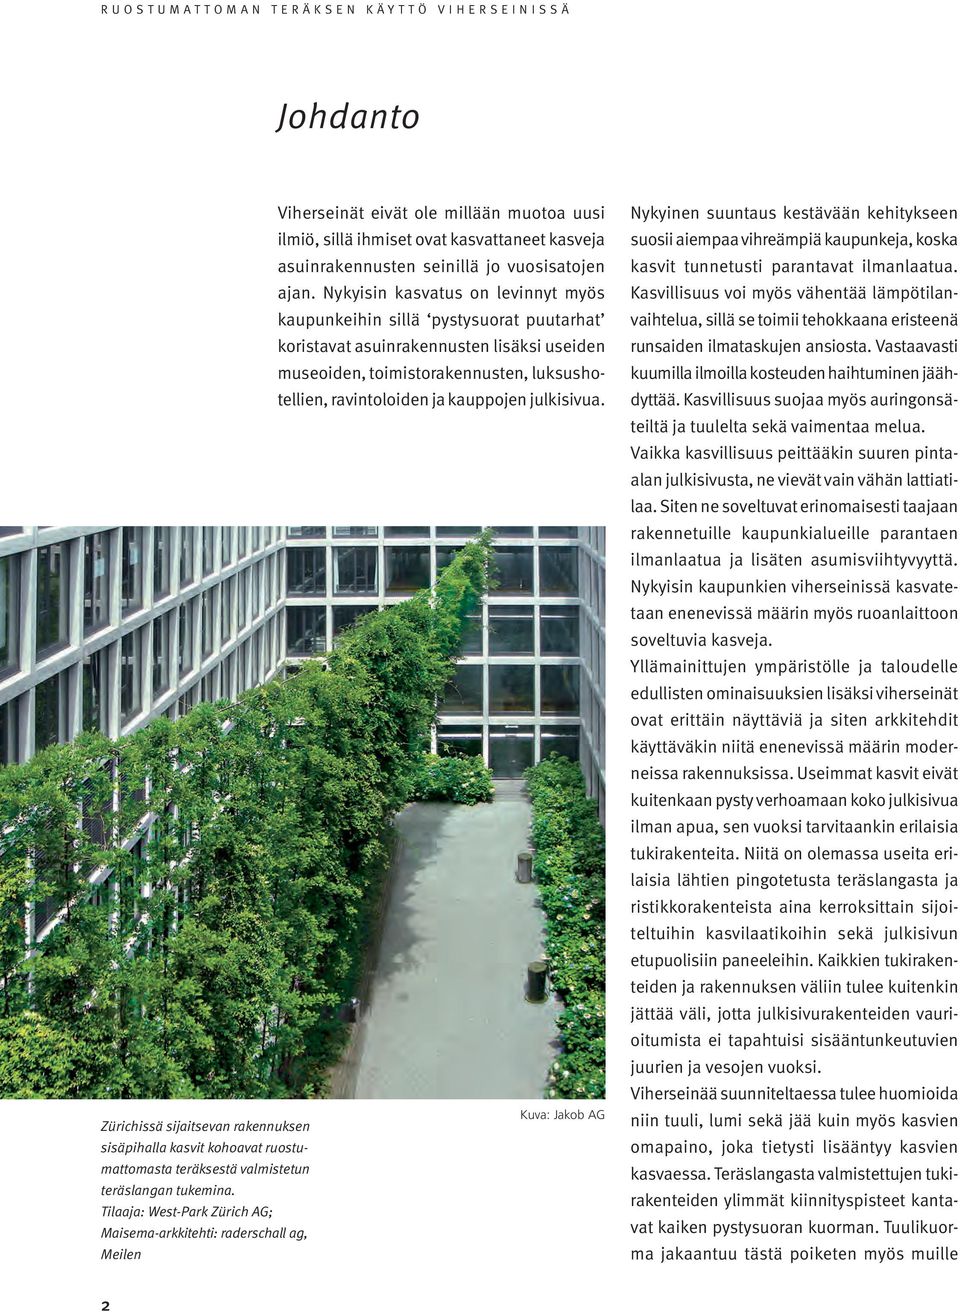 julkisivua. Kuva: Jakob AG Zürichissä sijaitsevan rakennuksen sisäpihalla kasvit kohoavat ruostumattomasta teräksestä valmistetun teräslangan tukemina.